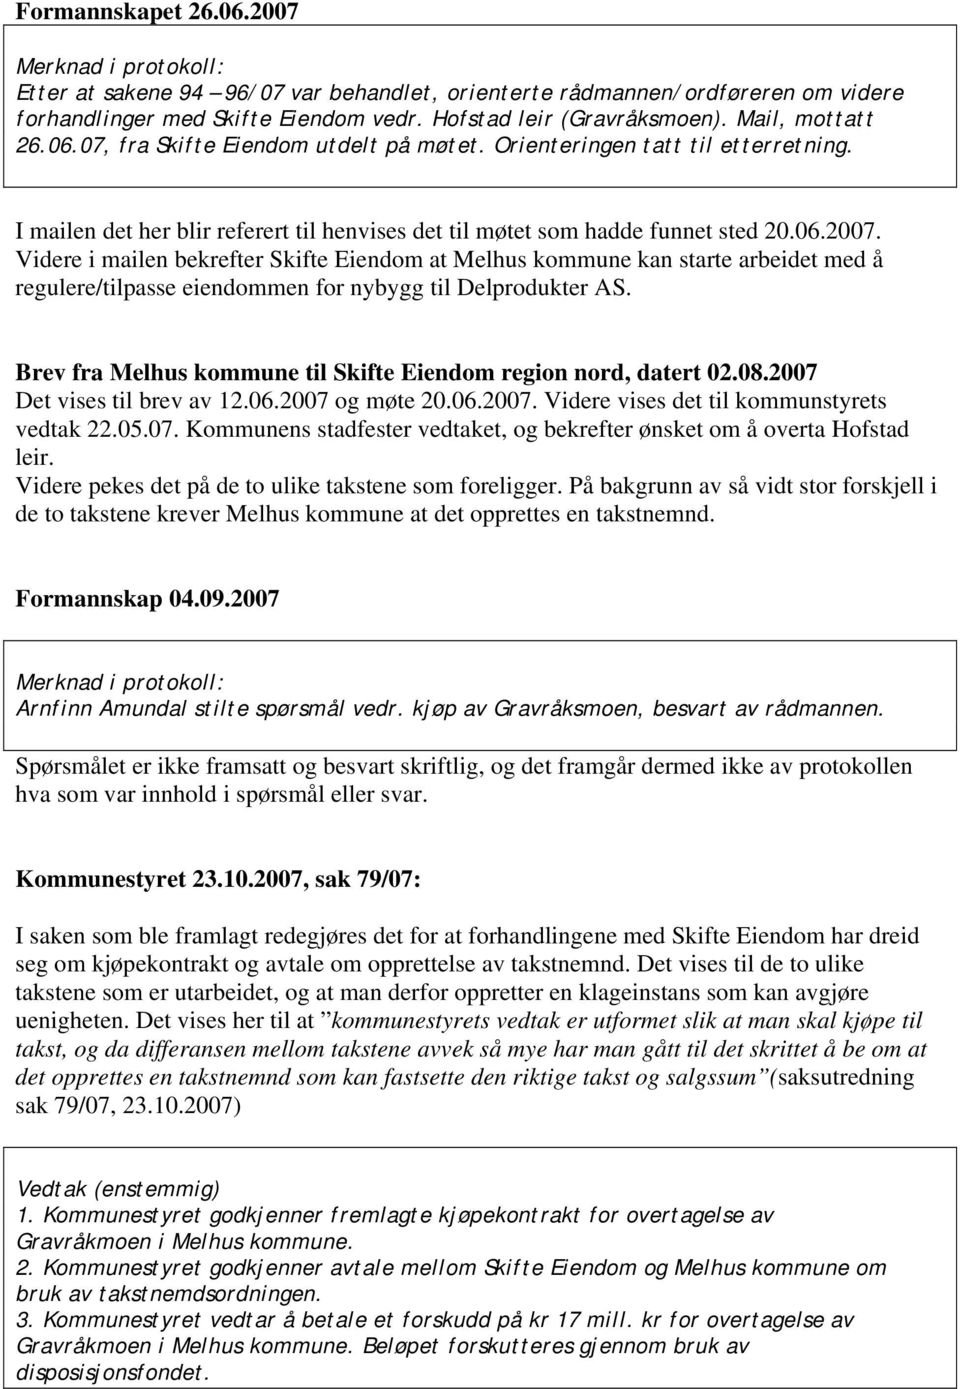 Videre i mailen bekrefter Skifte Eiendom at Melhus kommune kan starte arbeidet med å regulere/tilpasse eiendommen for nybygg til Delprodukter AS.